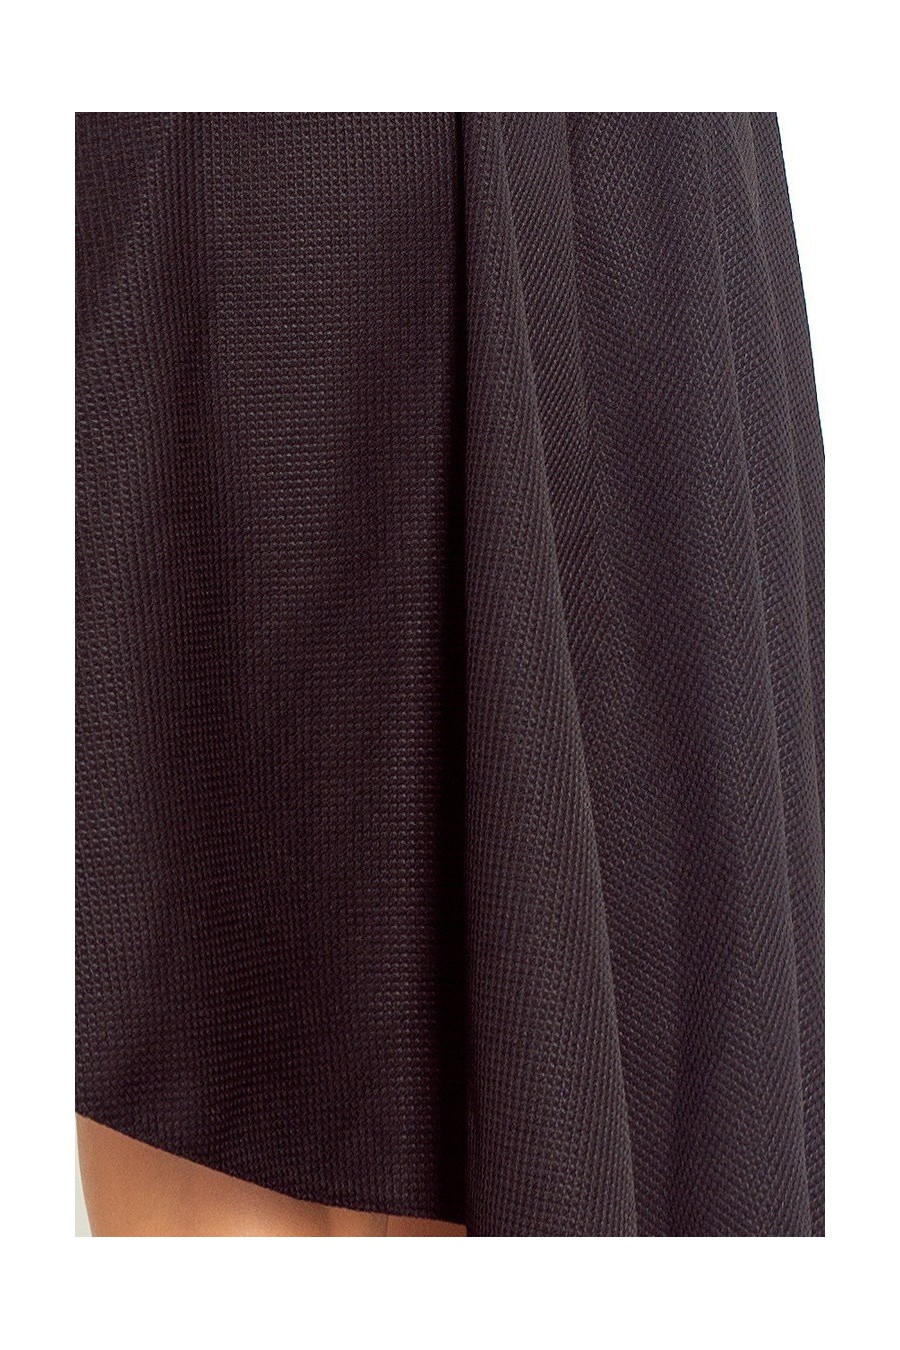 Lacosta - Exclusive asymetrické šaty - cerna 66-2